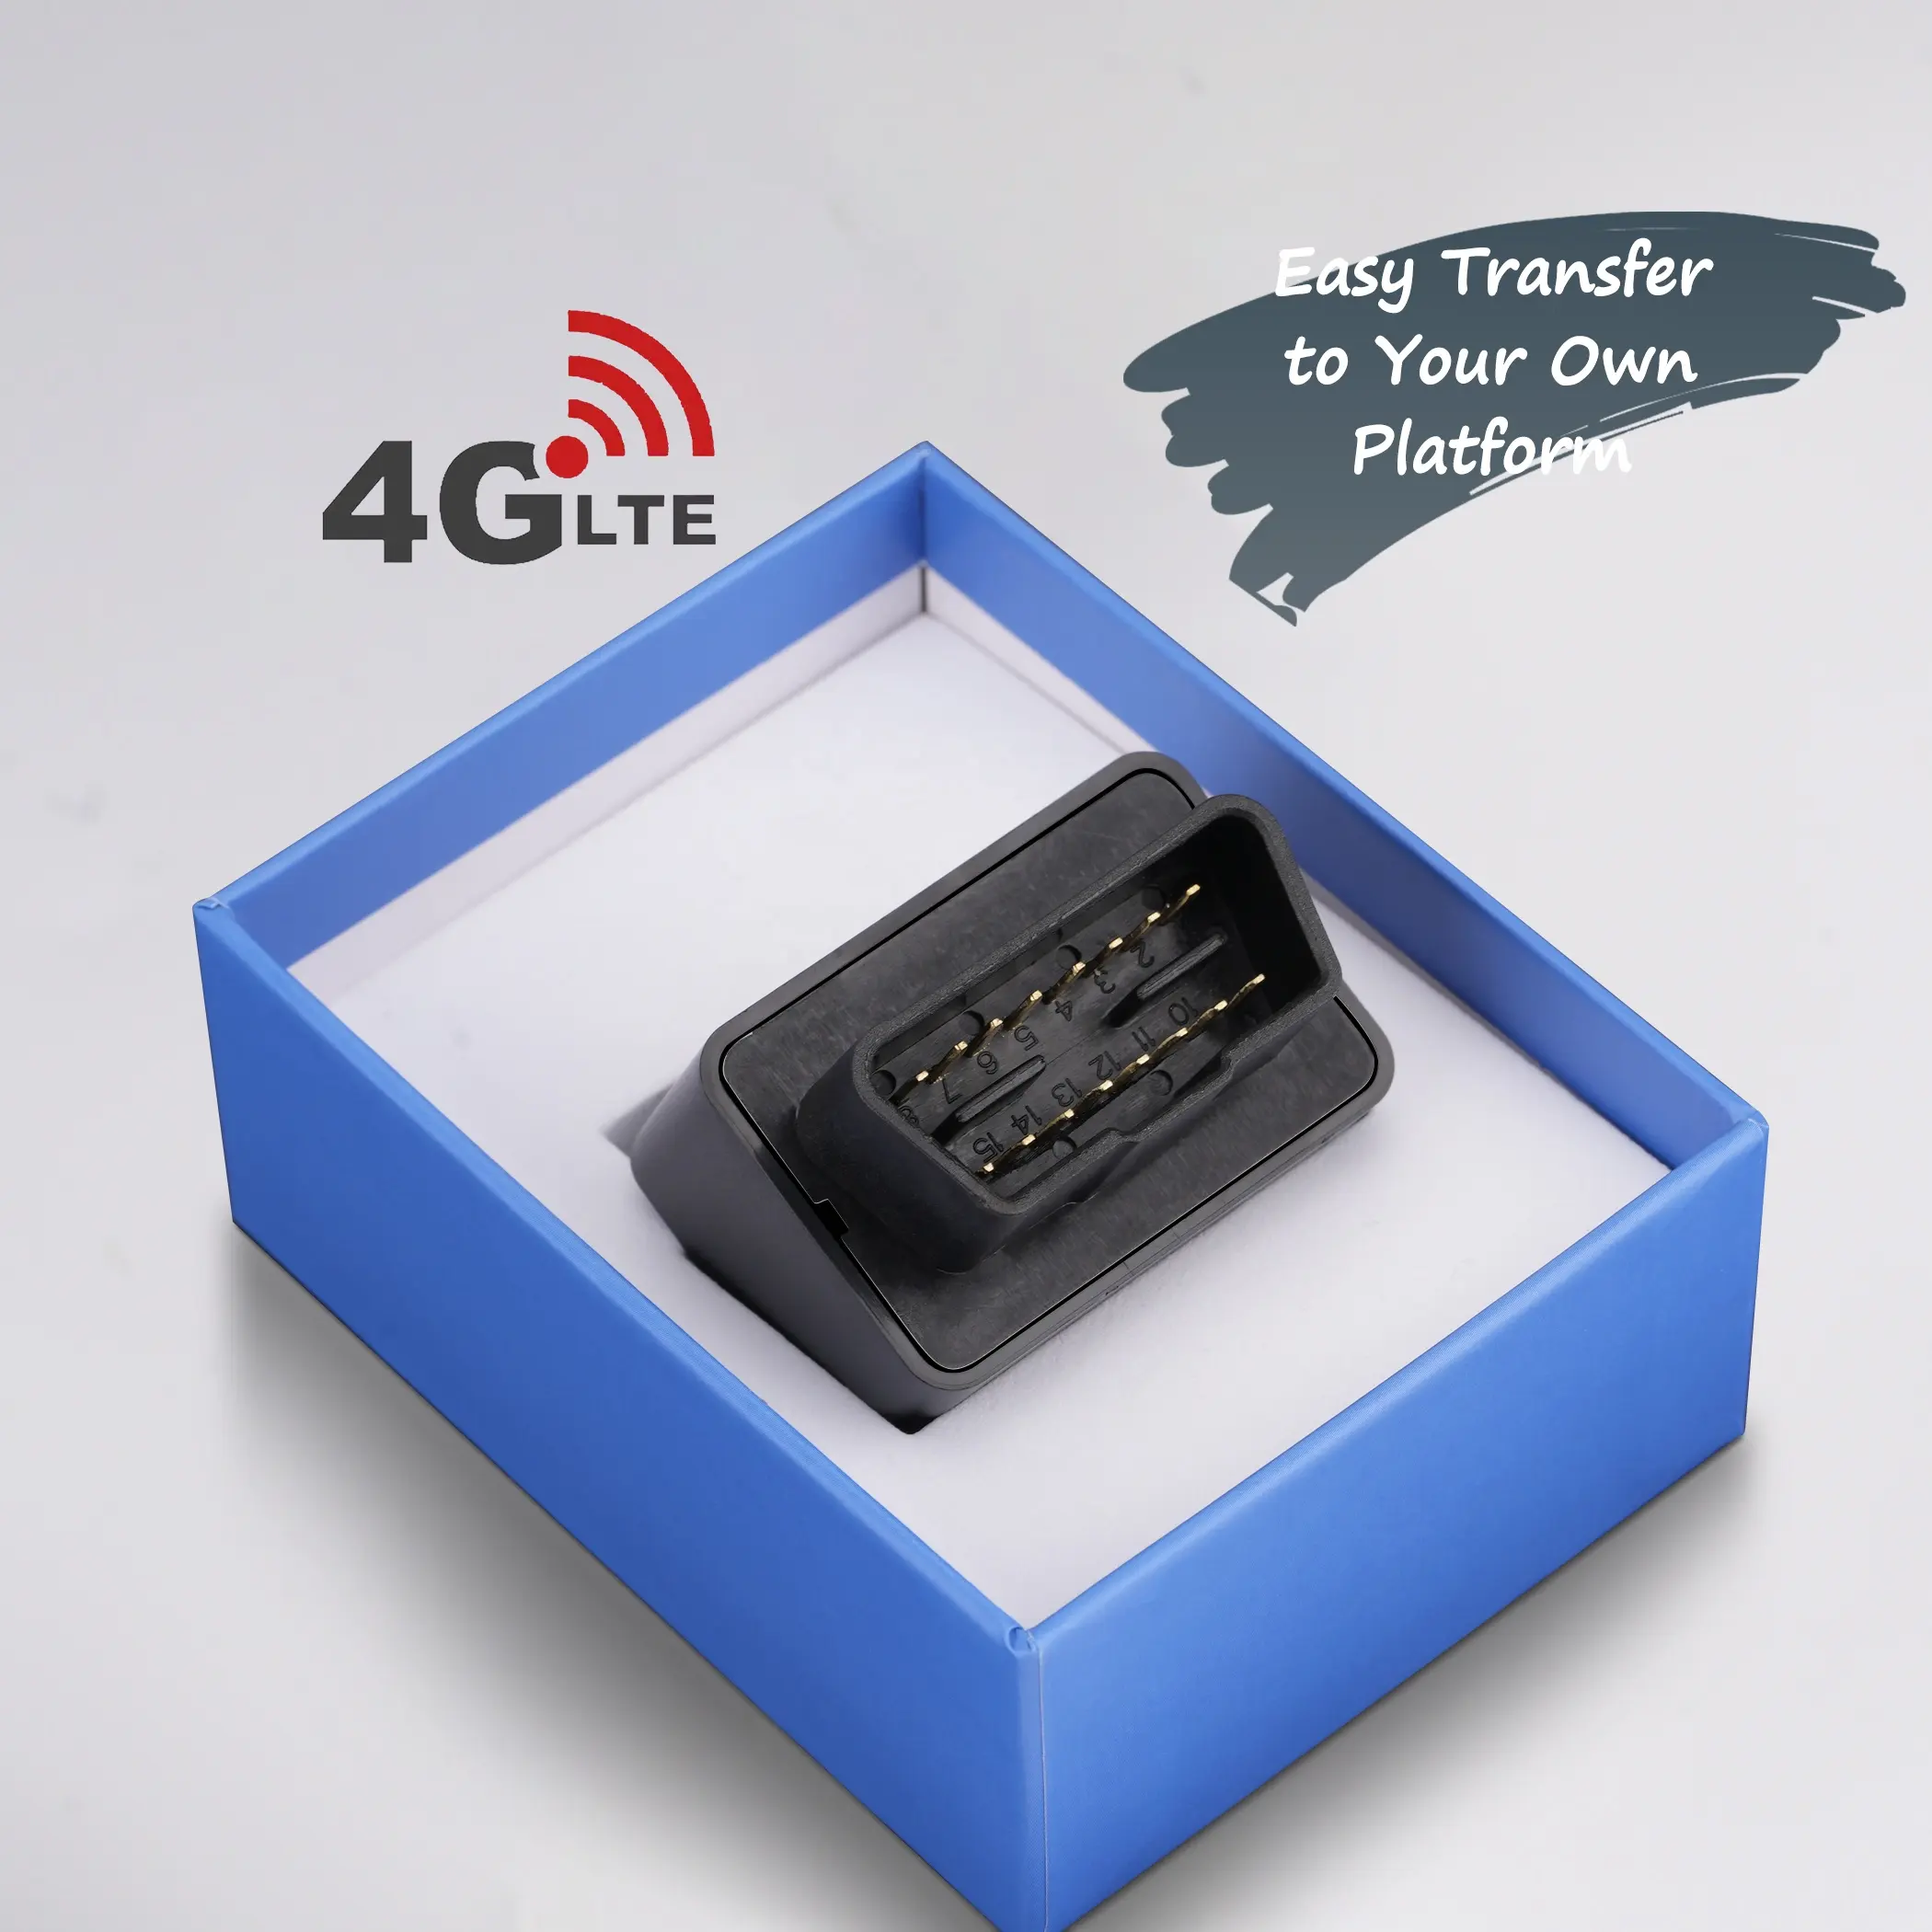 4G 2G OBDOBDIIカーGPSトラッカーロケーターリアルタイムトラッキングデバイスAndroidおよびIOS用の無料アプリクライアントロゴ印刷インストールが簡単